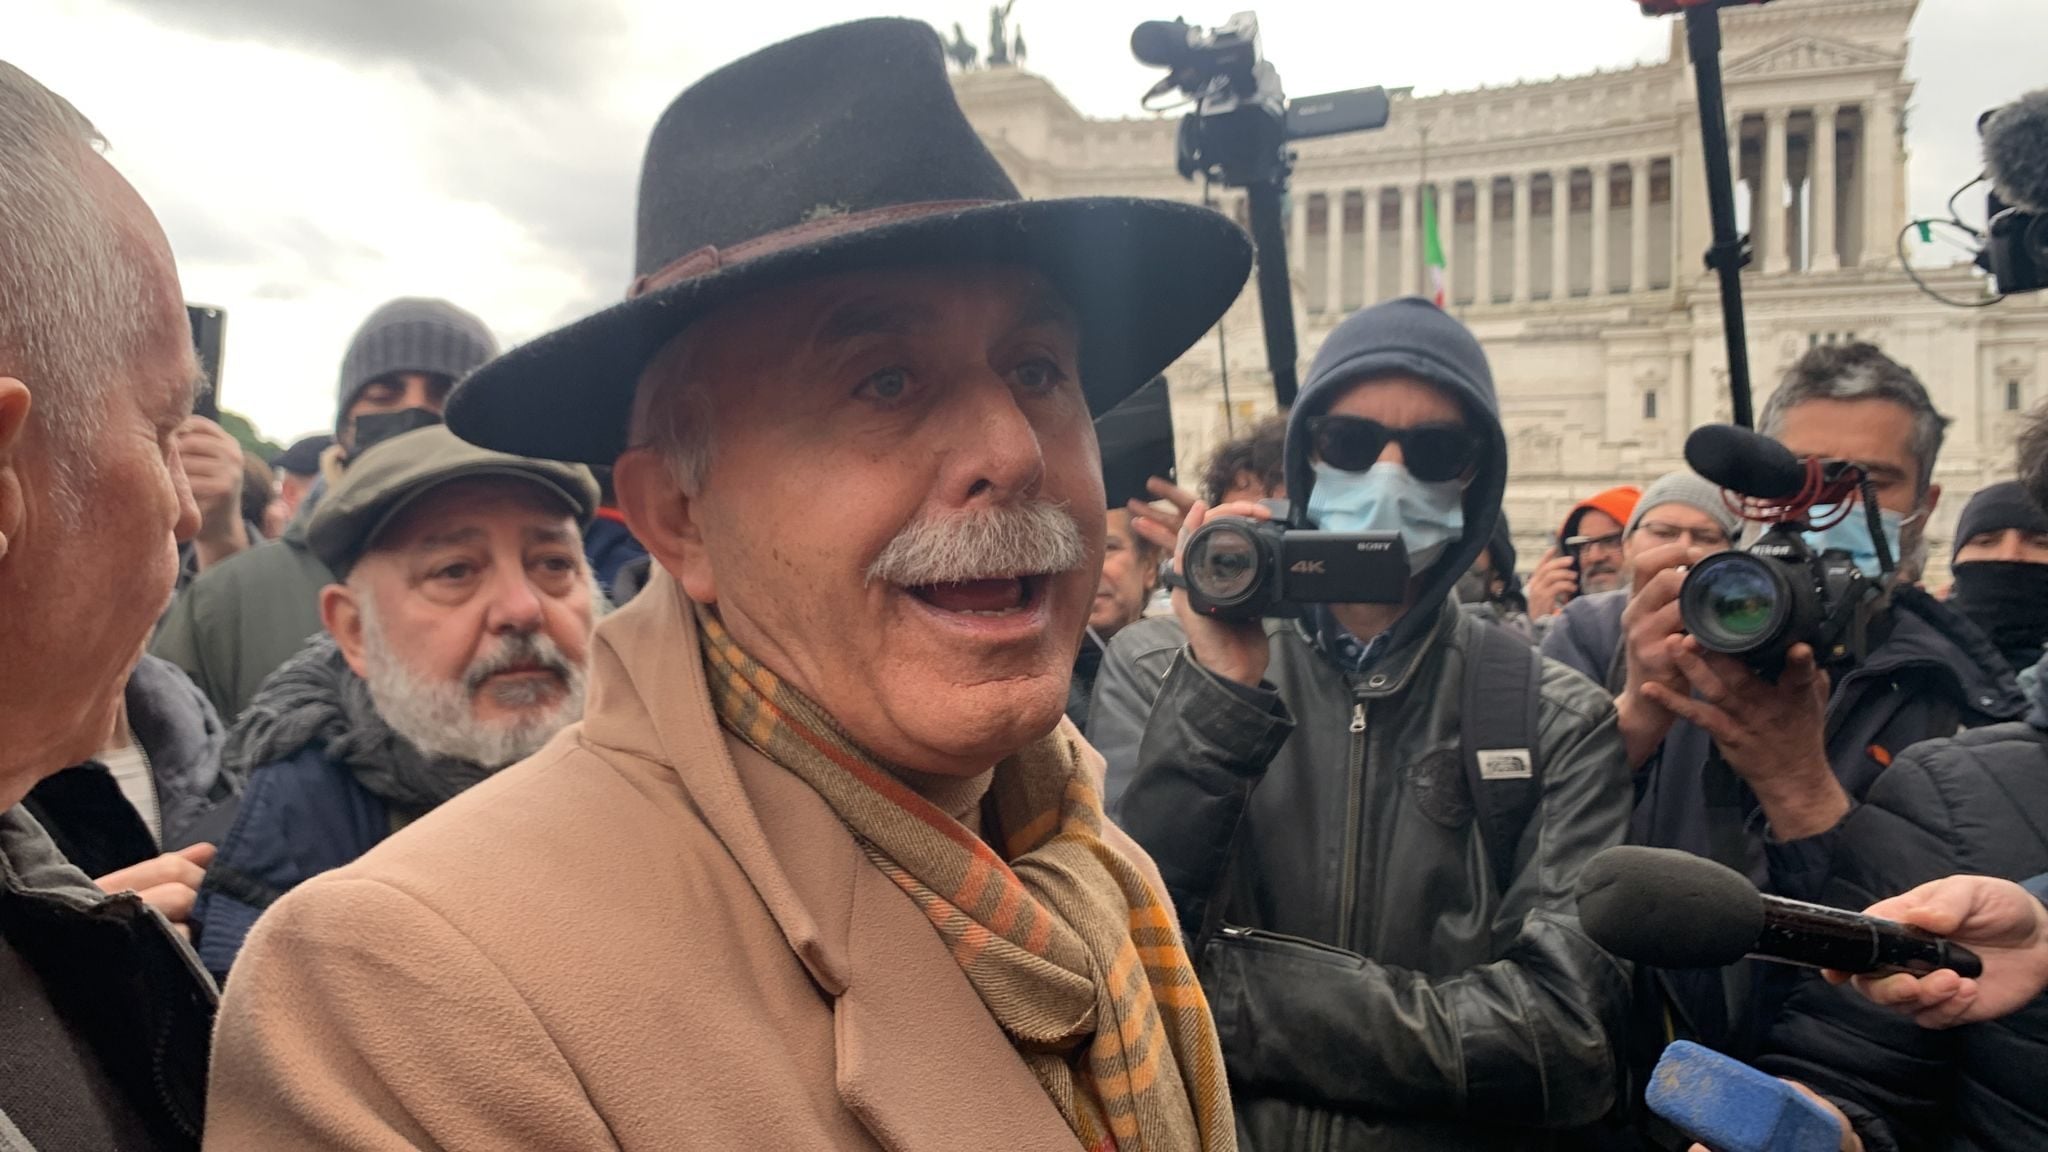 Il generale Pappalardo 'eversivo' a una manifestazione No Vax: "Arrestate Mattarella, processate Draghi per estorsione"